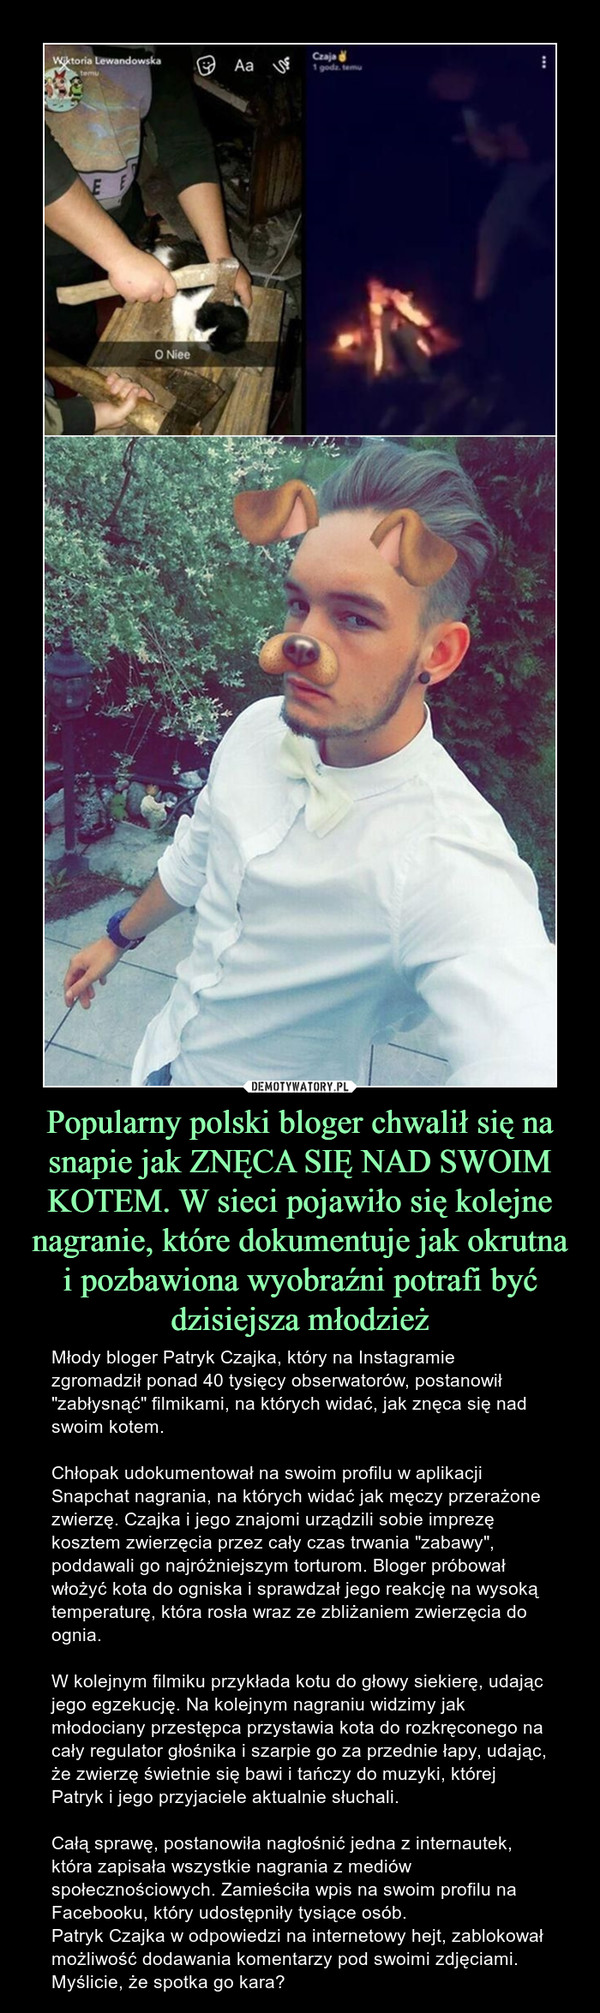 Popularny polski bloger chwalił się na snapie jak ZNĘCA SIĘ NAD SWOIM KOTEM. W sieci pojawiło się kolejne nagranie, które dokumentuje jak okrutna i pozbawiona wyobraźni potrafi być dzisiejsza młodzież